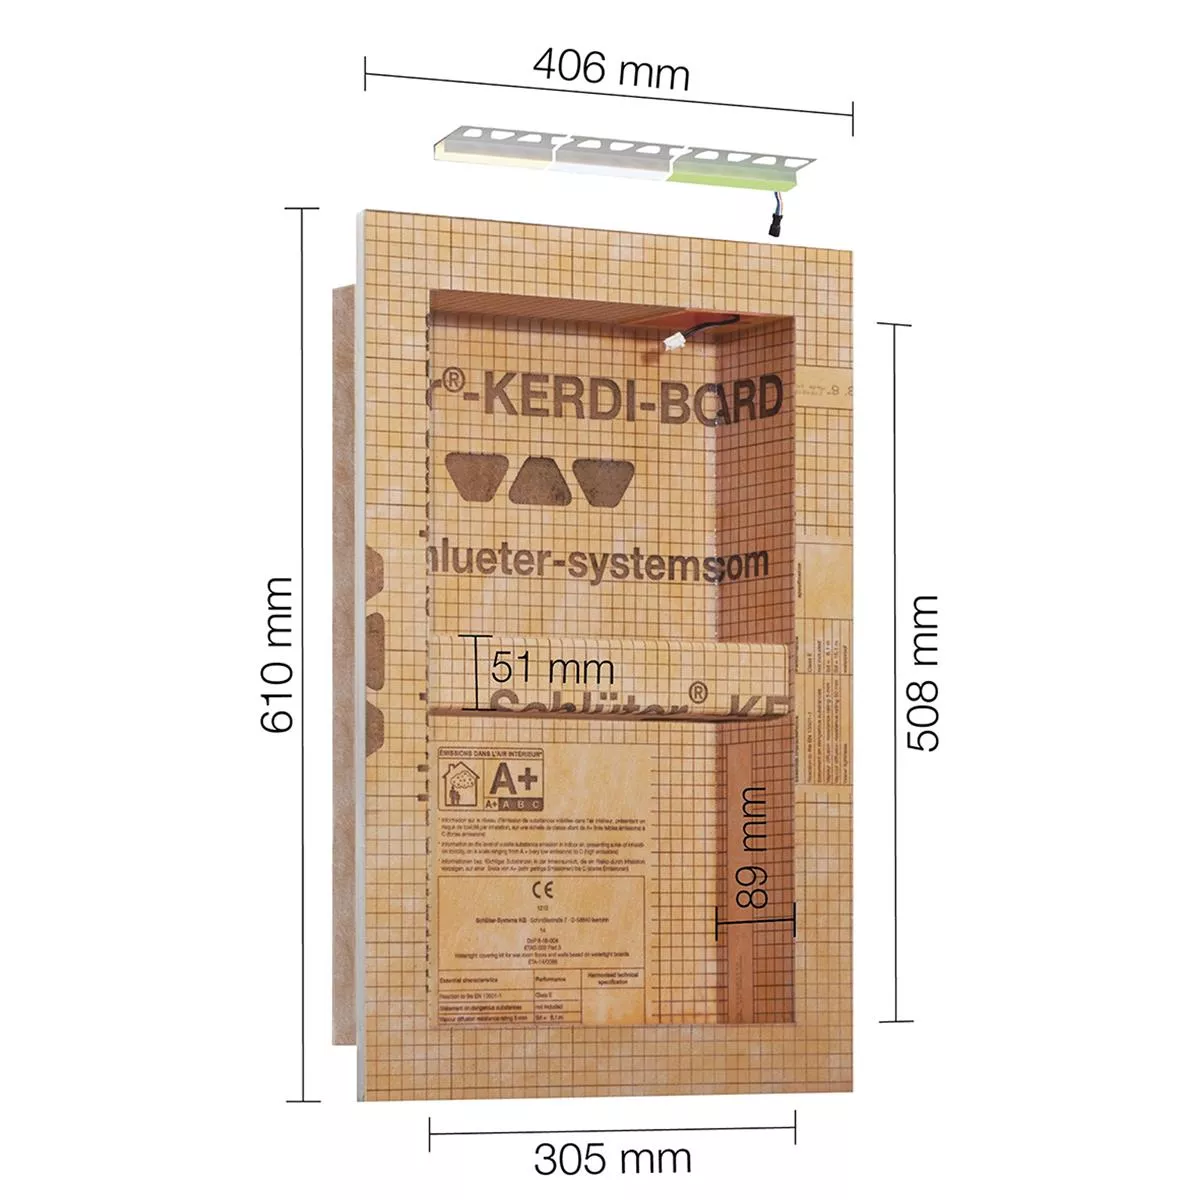 Schlüter Kerdi Board NLT výklenkový set LED osvětlení teplá bílá 30,5x50,8x0,89 cm